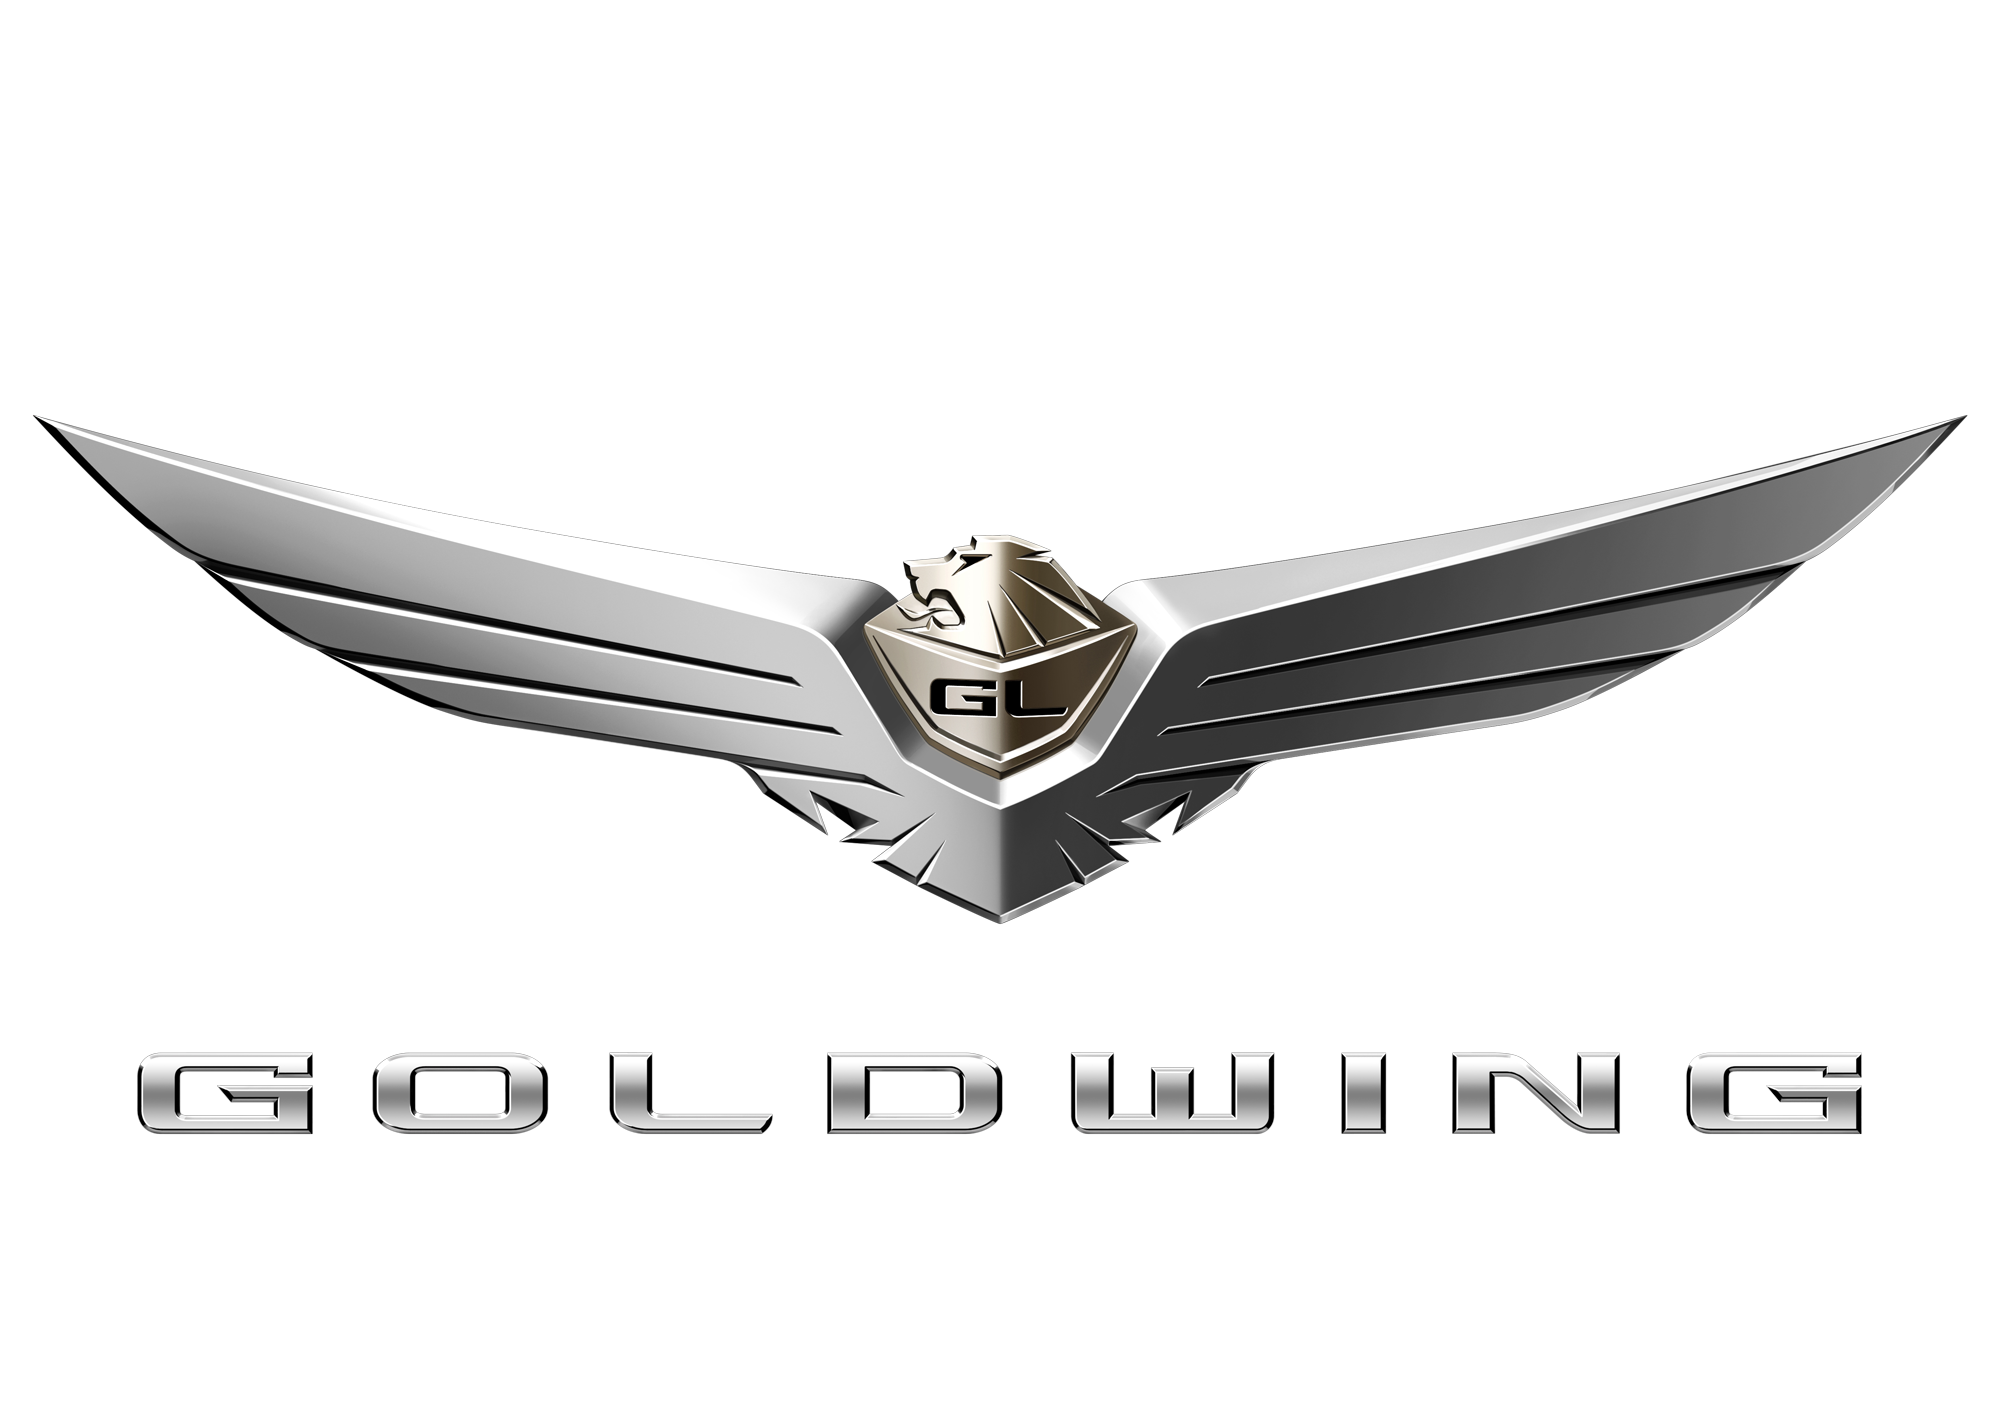 Goldwing